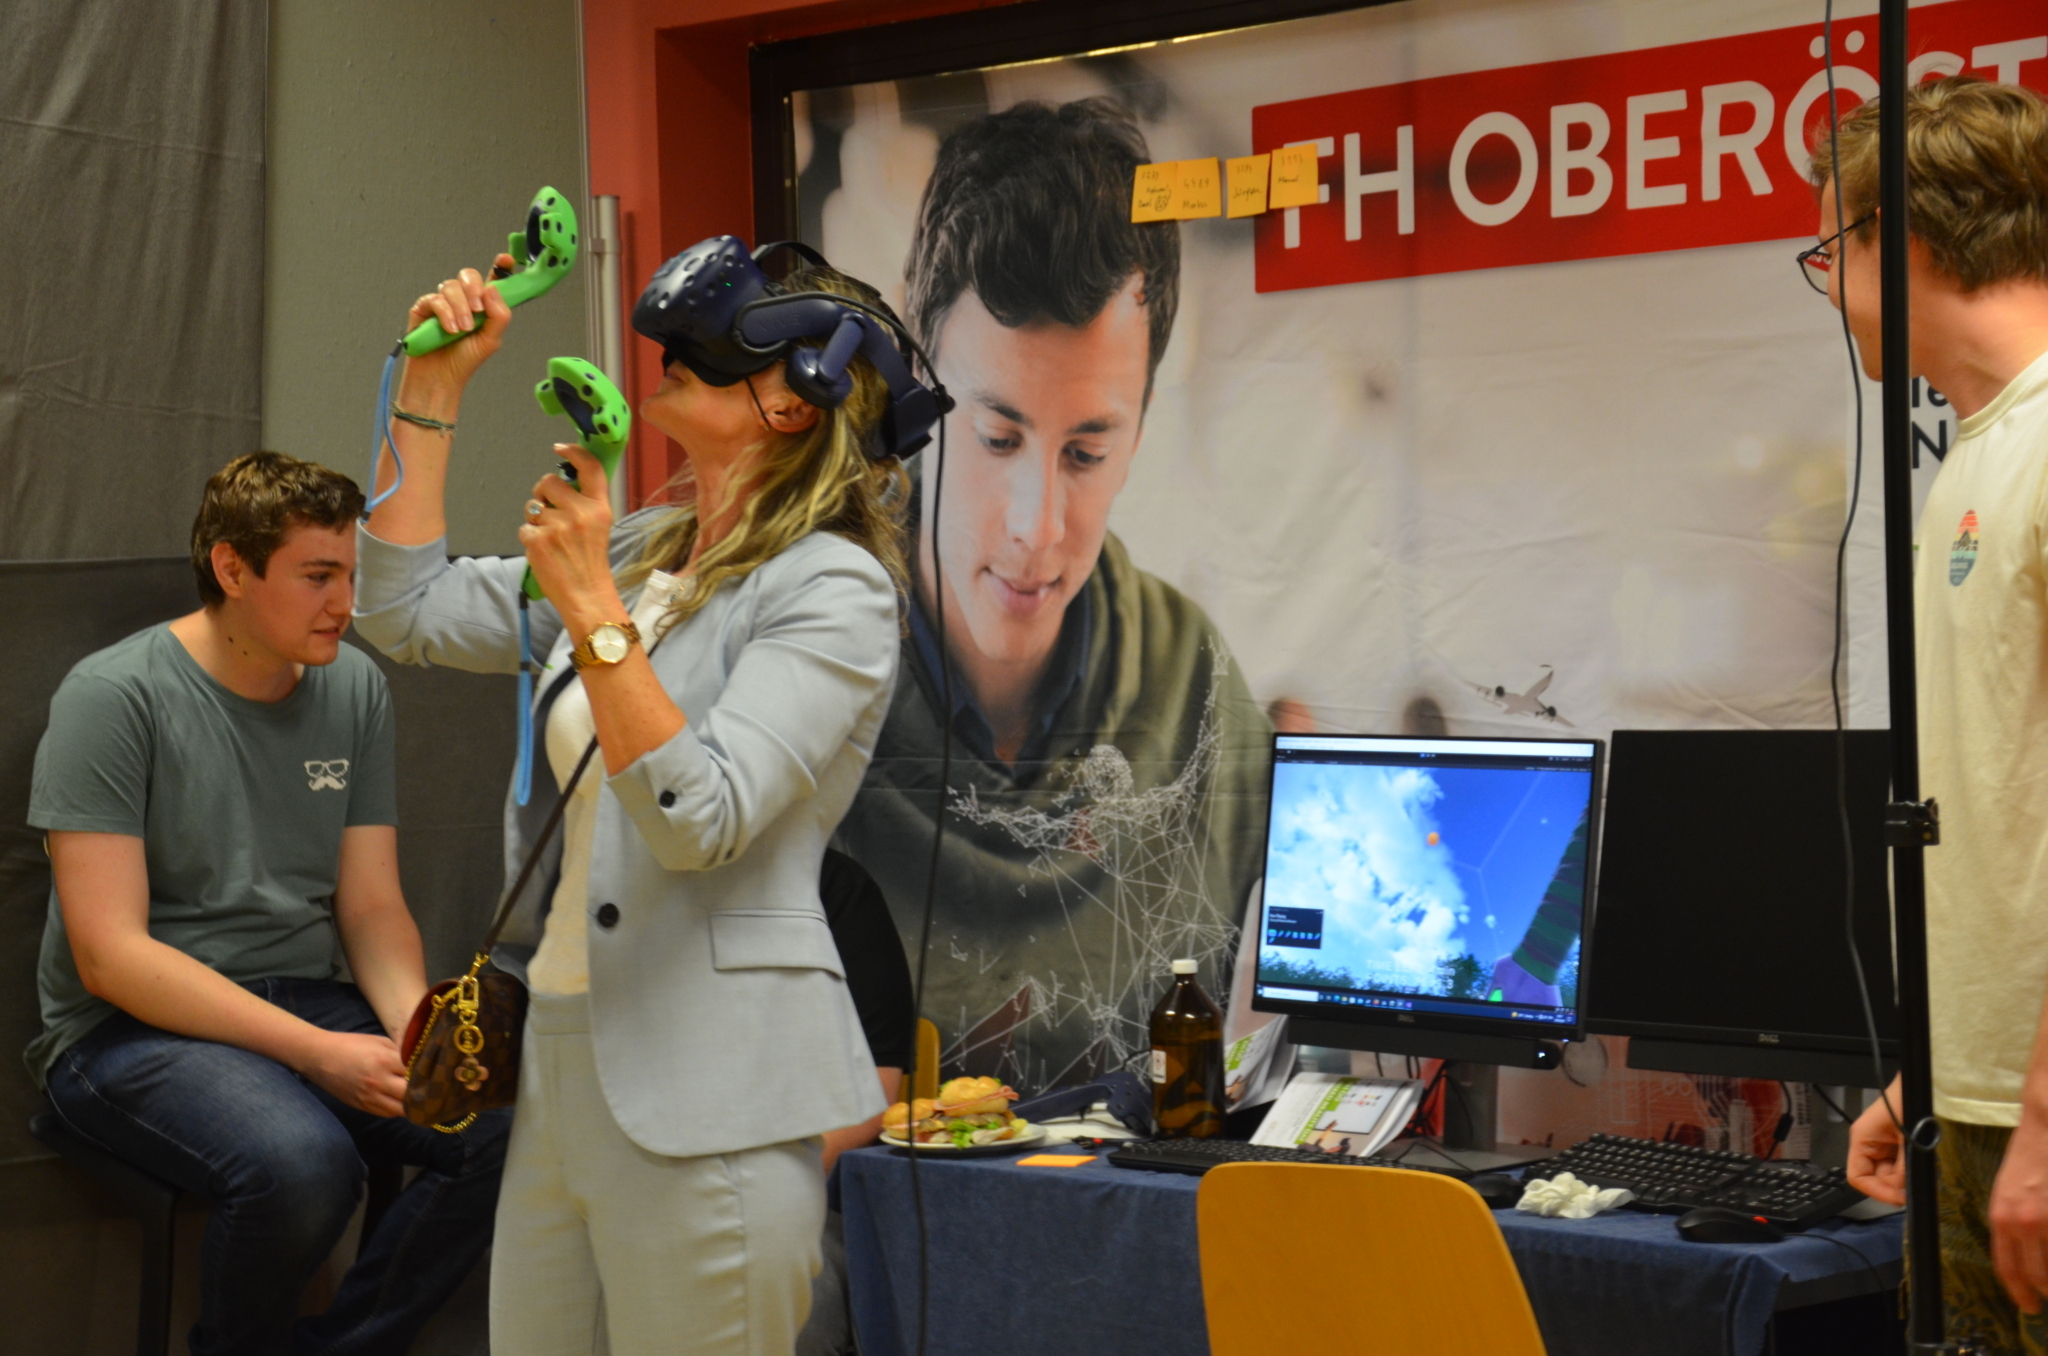 Eine Person steht neben einem Computer, hat eine VR-Brille auf, zwei Joysticks in der Hand und spielt in einer virtuellen Welt.